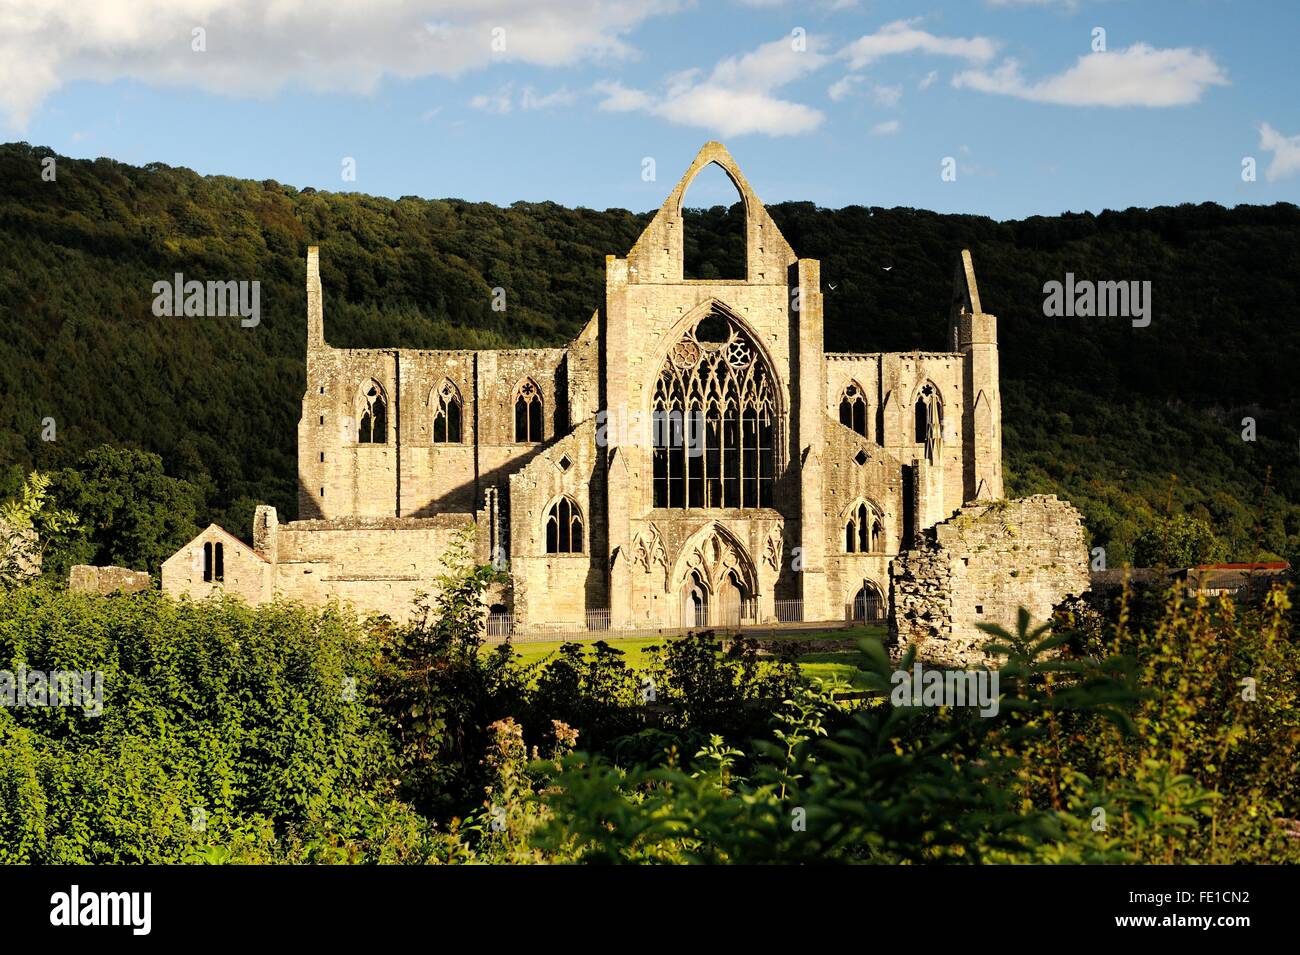 Tintern Abbey im Wye Valley, Monmouthshire, Wales, UK. Zisterziensische christliche Kloster gegründet 1131. Sommer-Abendsonne Stockfoto